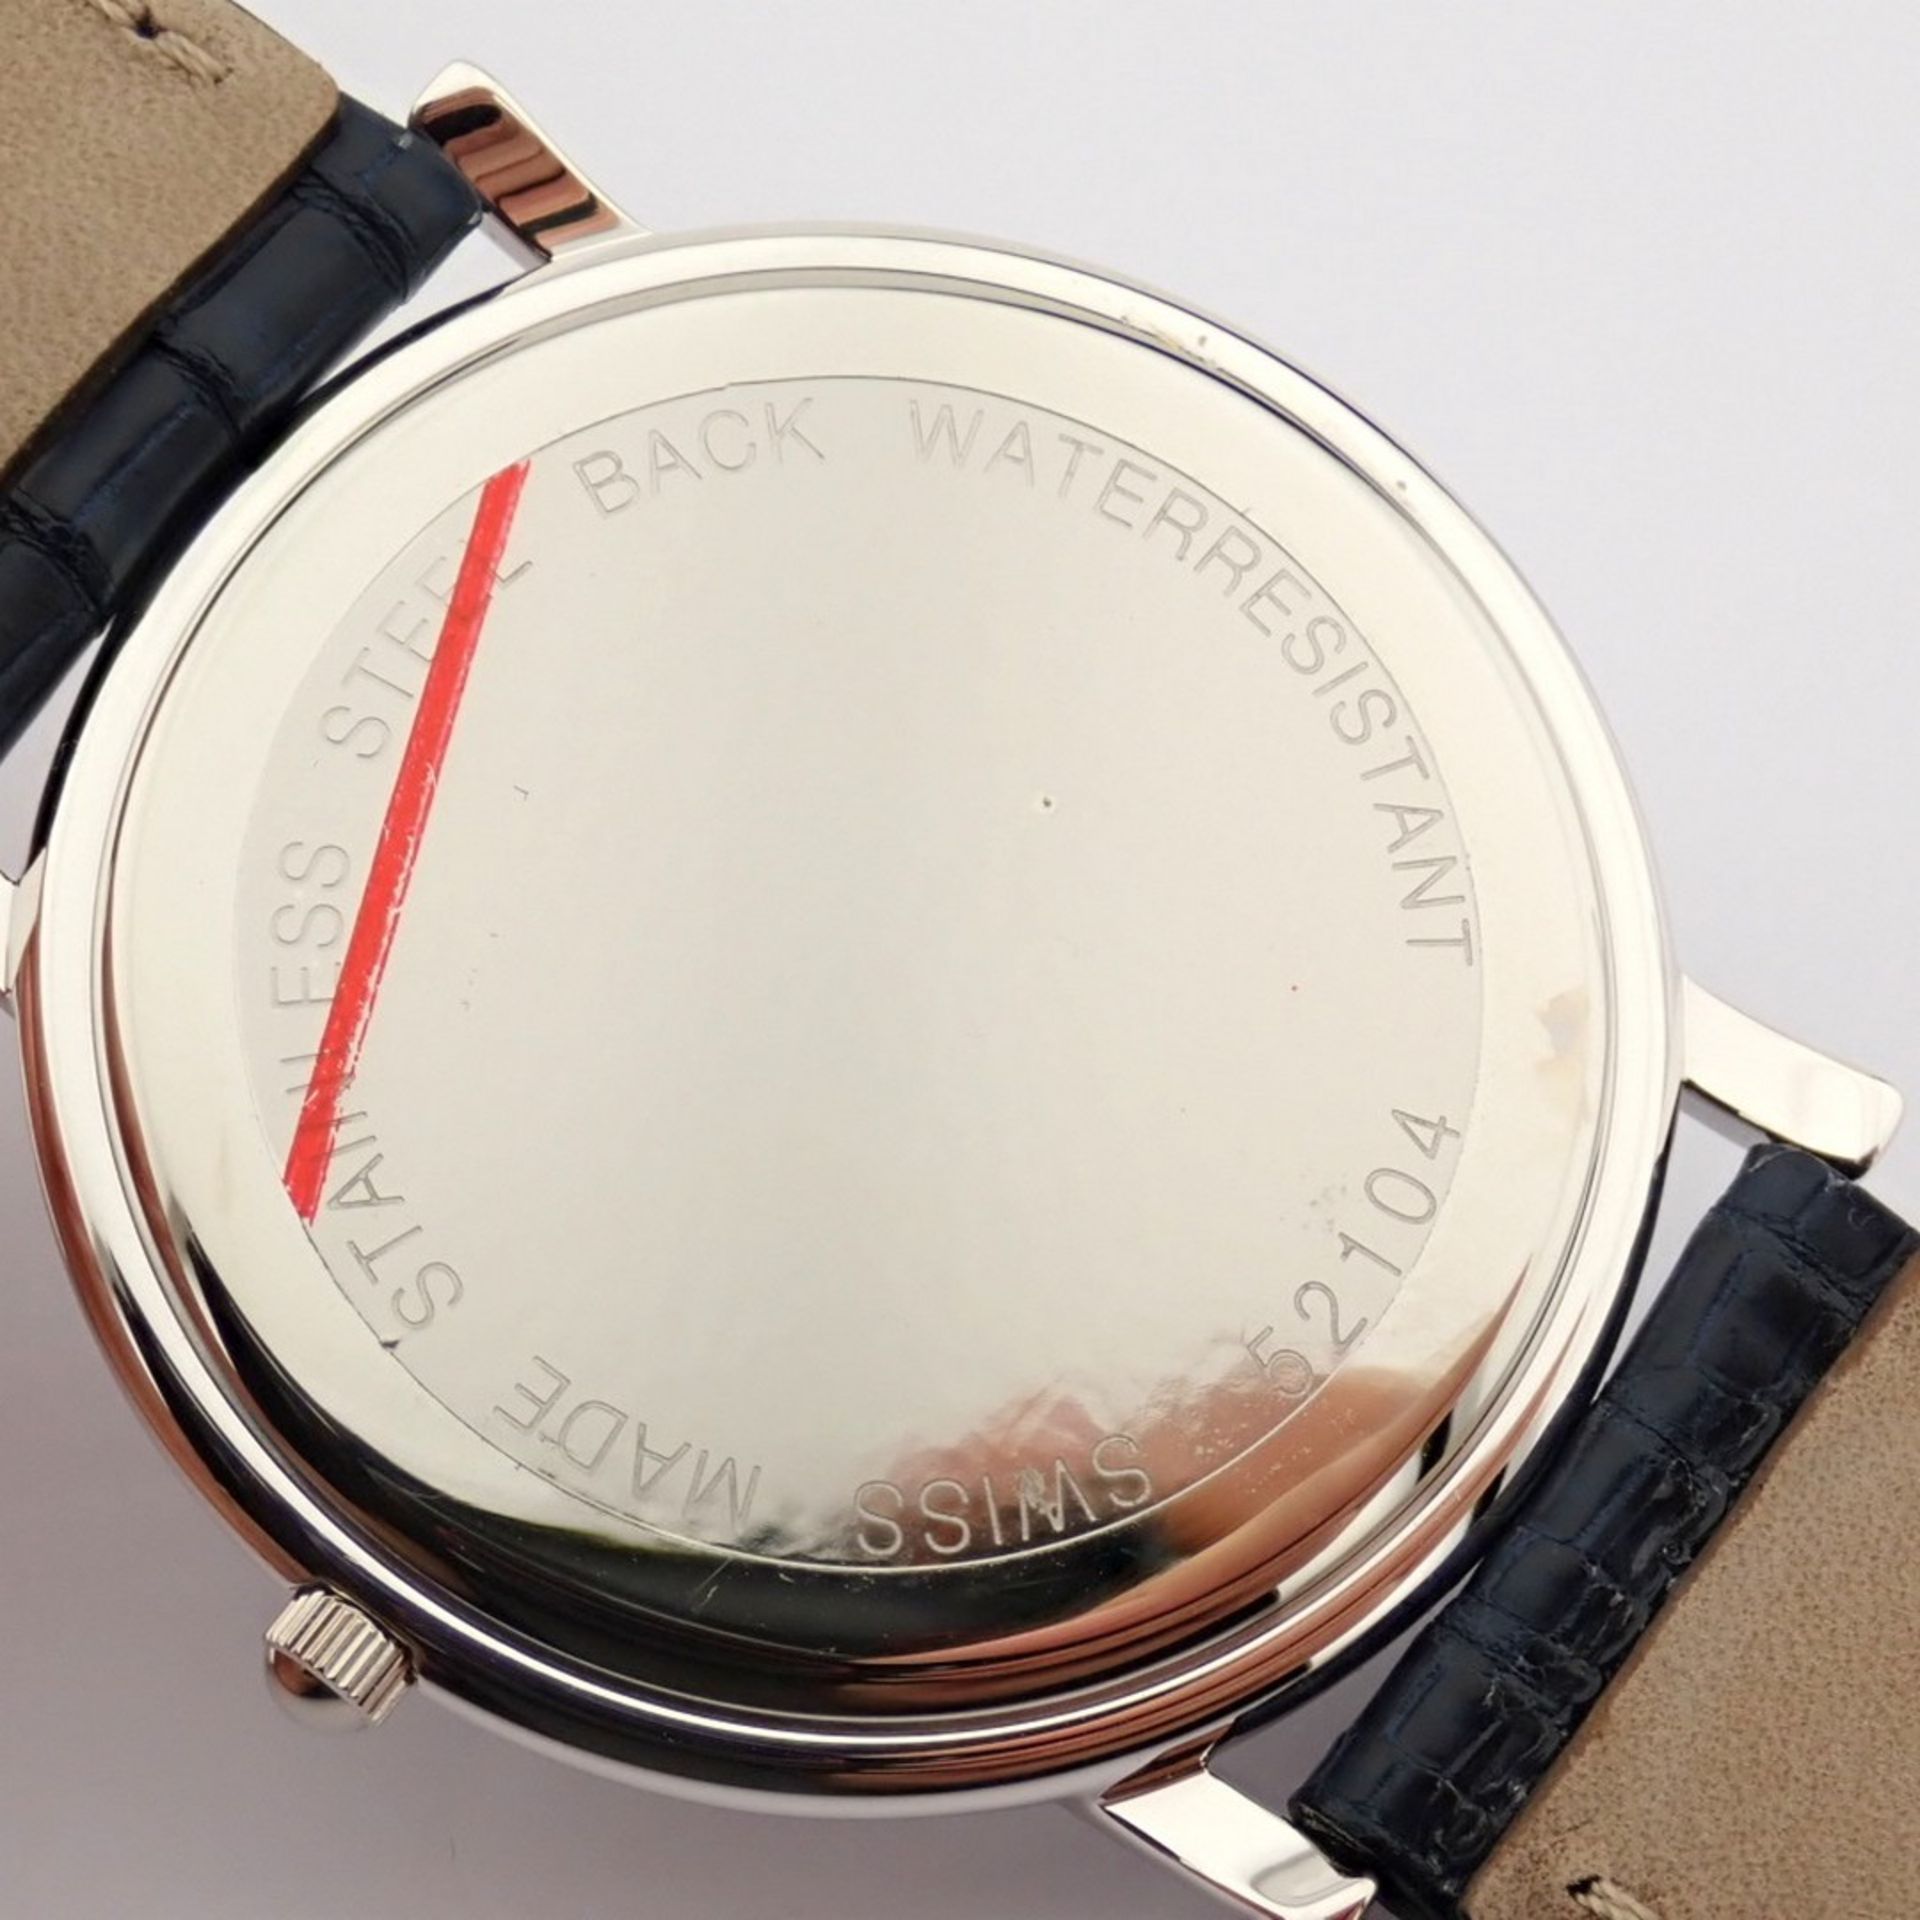 Louis Erard - (Unworn) Gentlemen's Steel Wrist Watch - Image 7 of 9